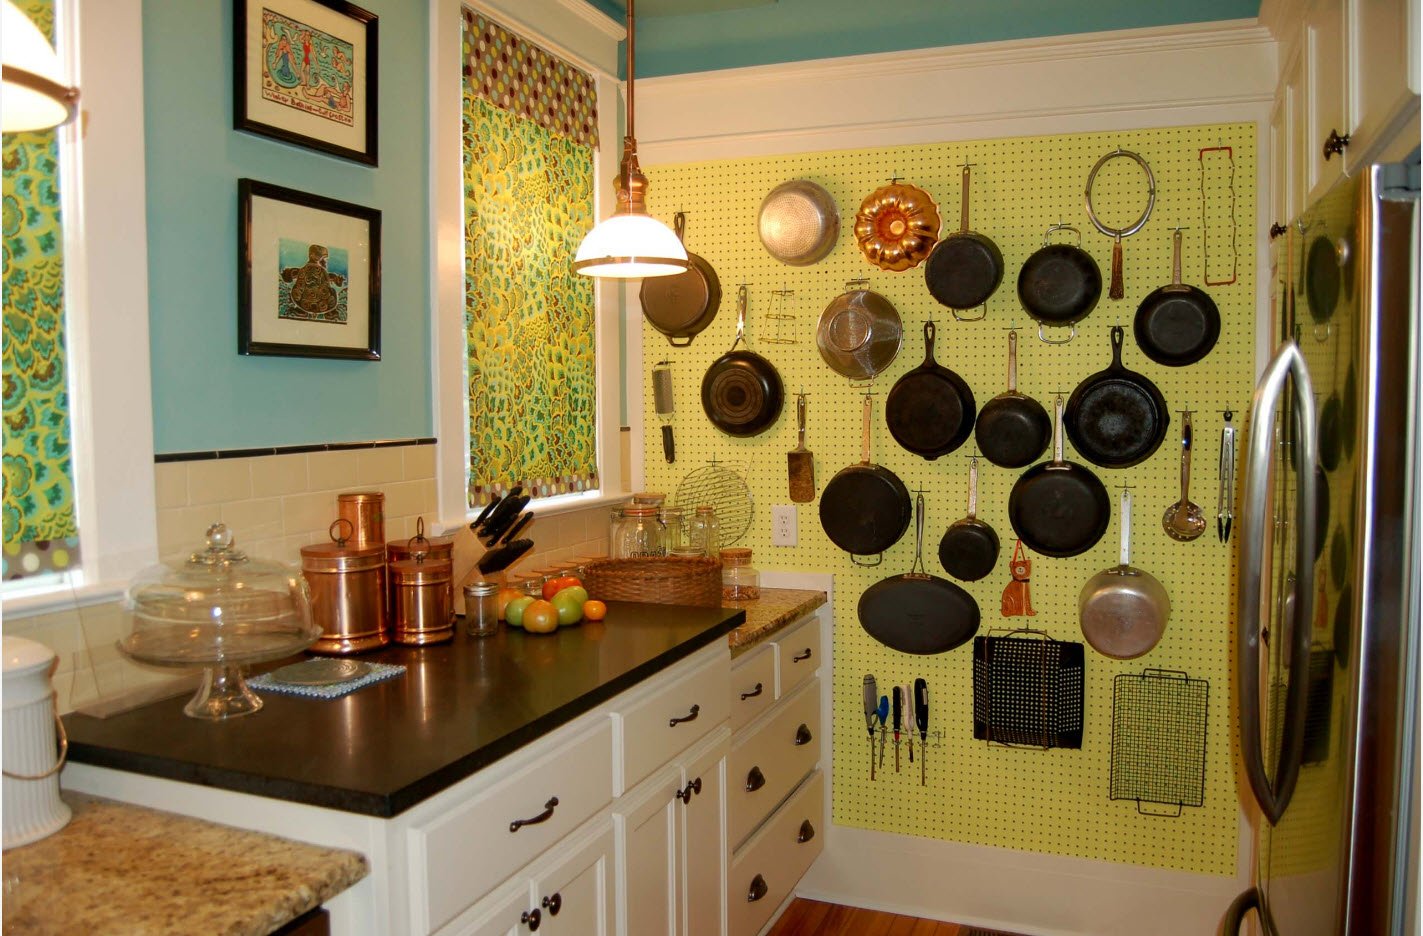 Поделки для кухни — советы, чертежи, схемы, выкройки и варианты применения в дизайне кухонного интерьера различных поделок (95 фото)